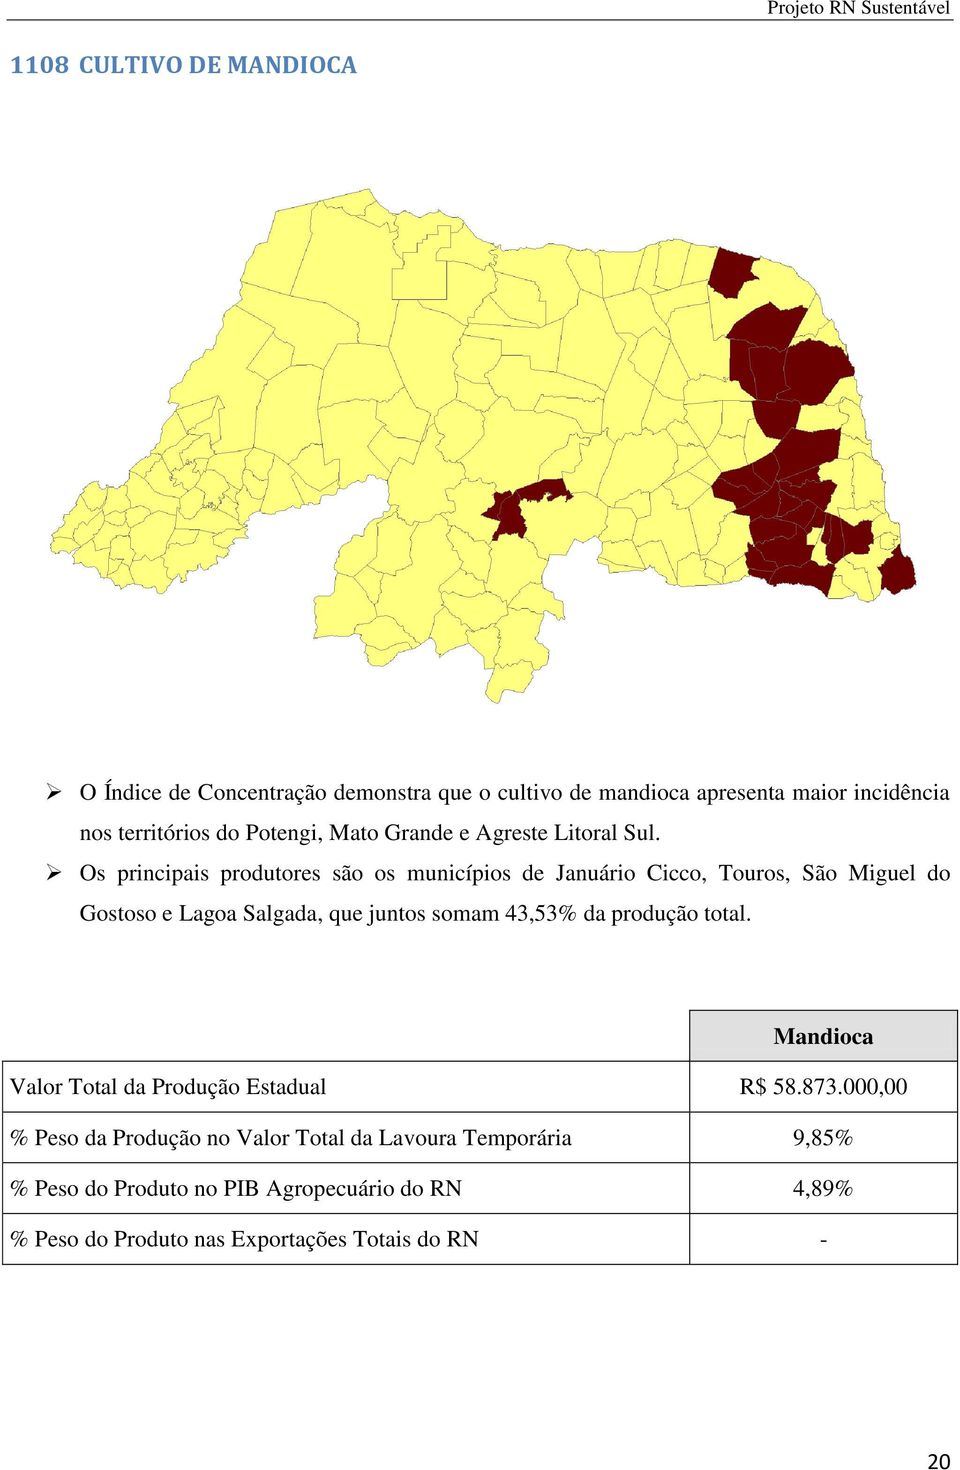 Os principais produtores são os municípios de Januário Cicco, Touros, São Miguel do Gostoso e Lagoa Salgada, que juntos somam 43,53% da